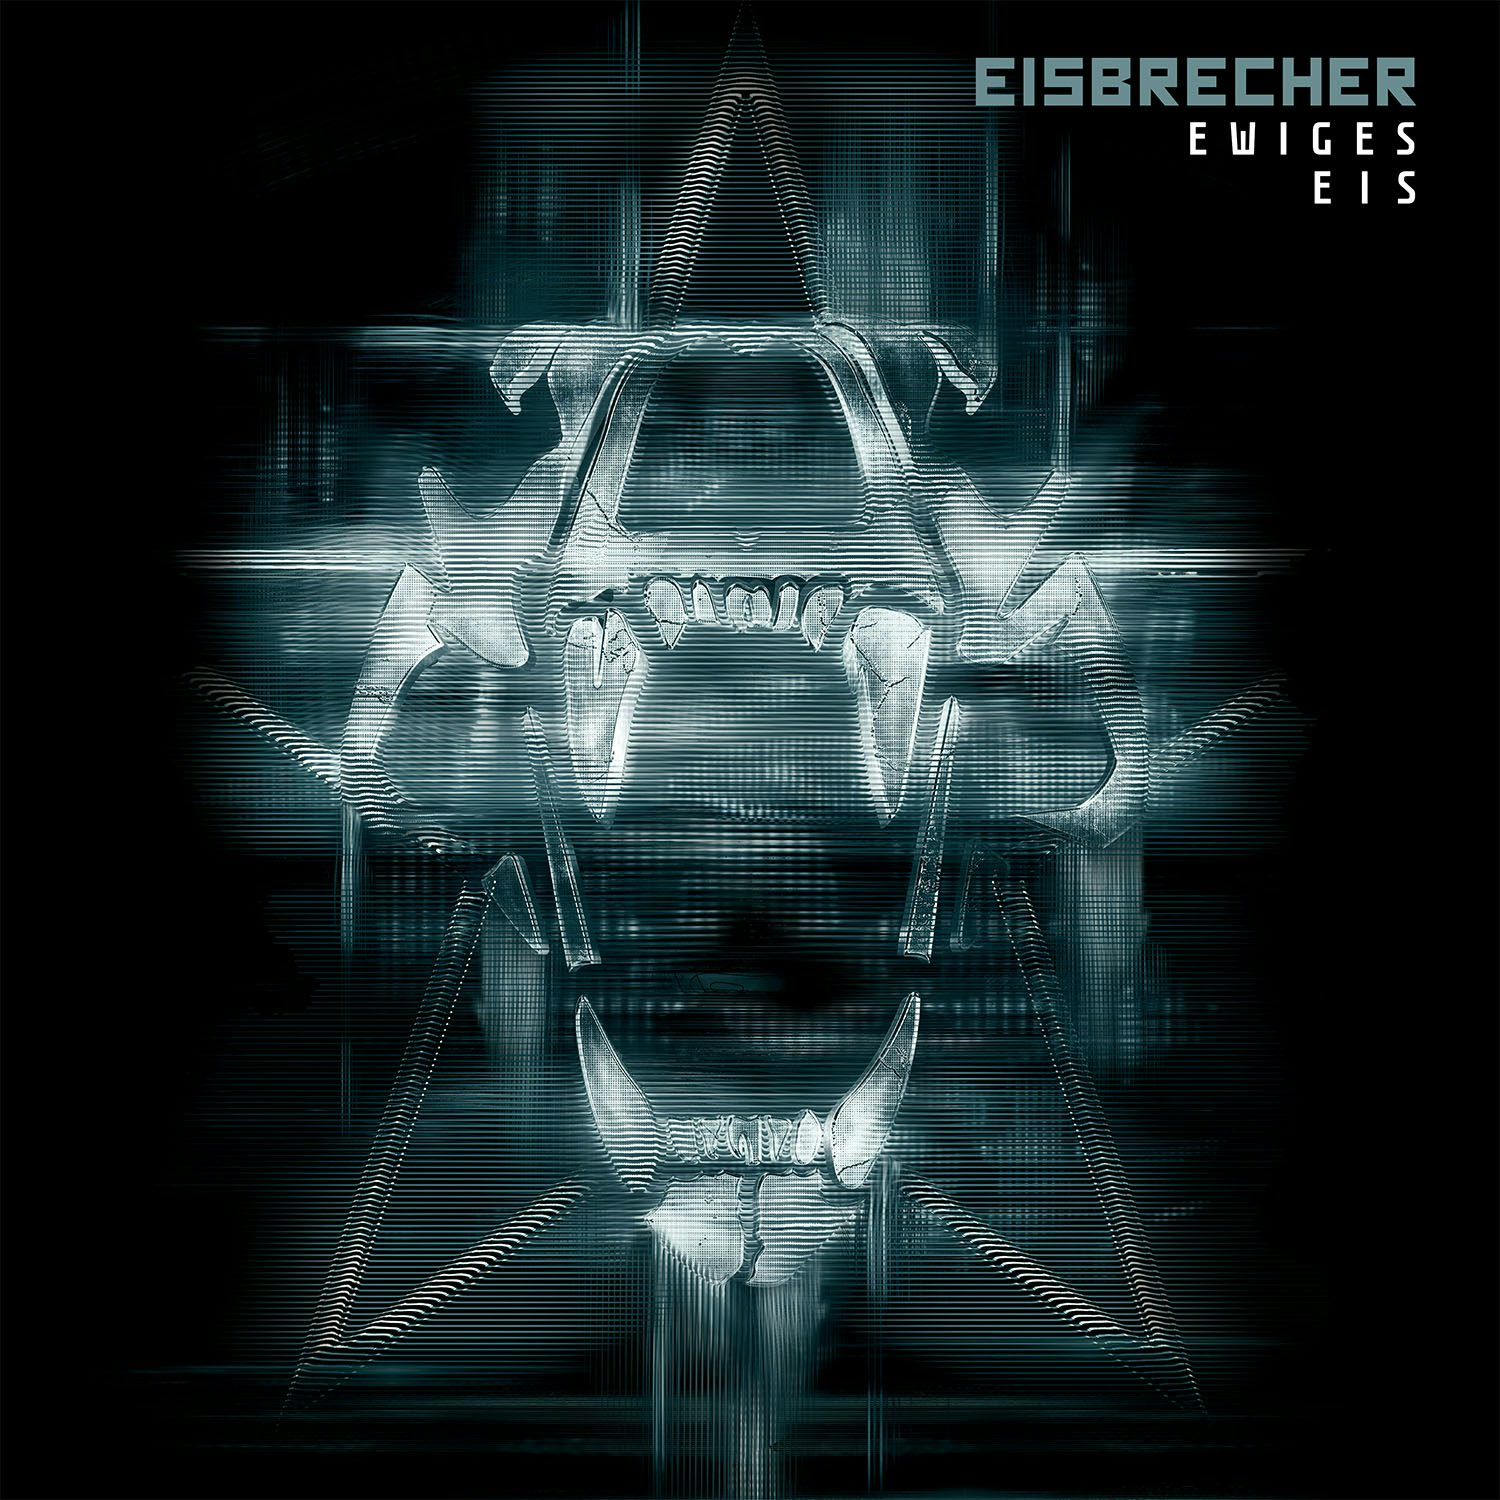 Eisbrecher rot wie liebe. Группа Eisbrecher. Eisbrecher фото обложек. Солист группы Eisbrecher. Eisbrecher обложки альбомов.